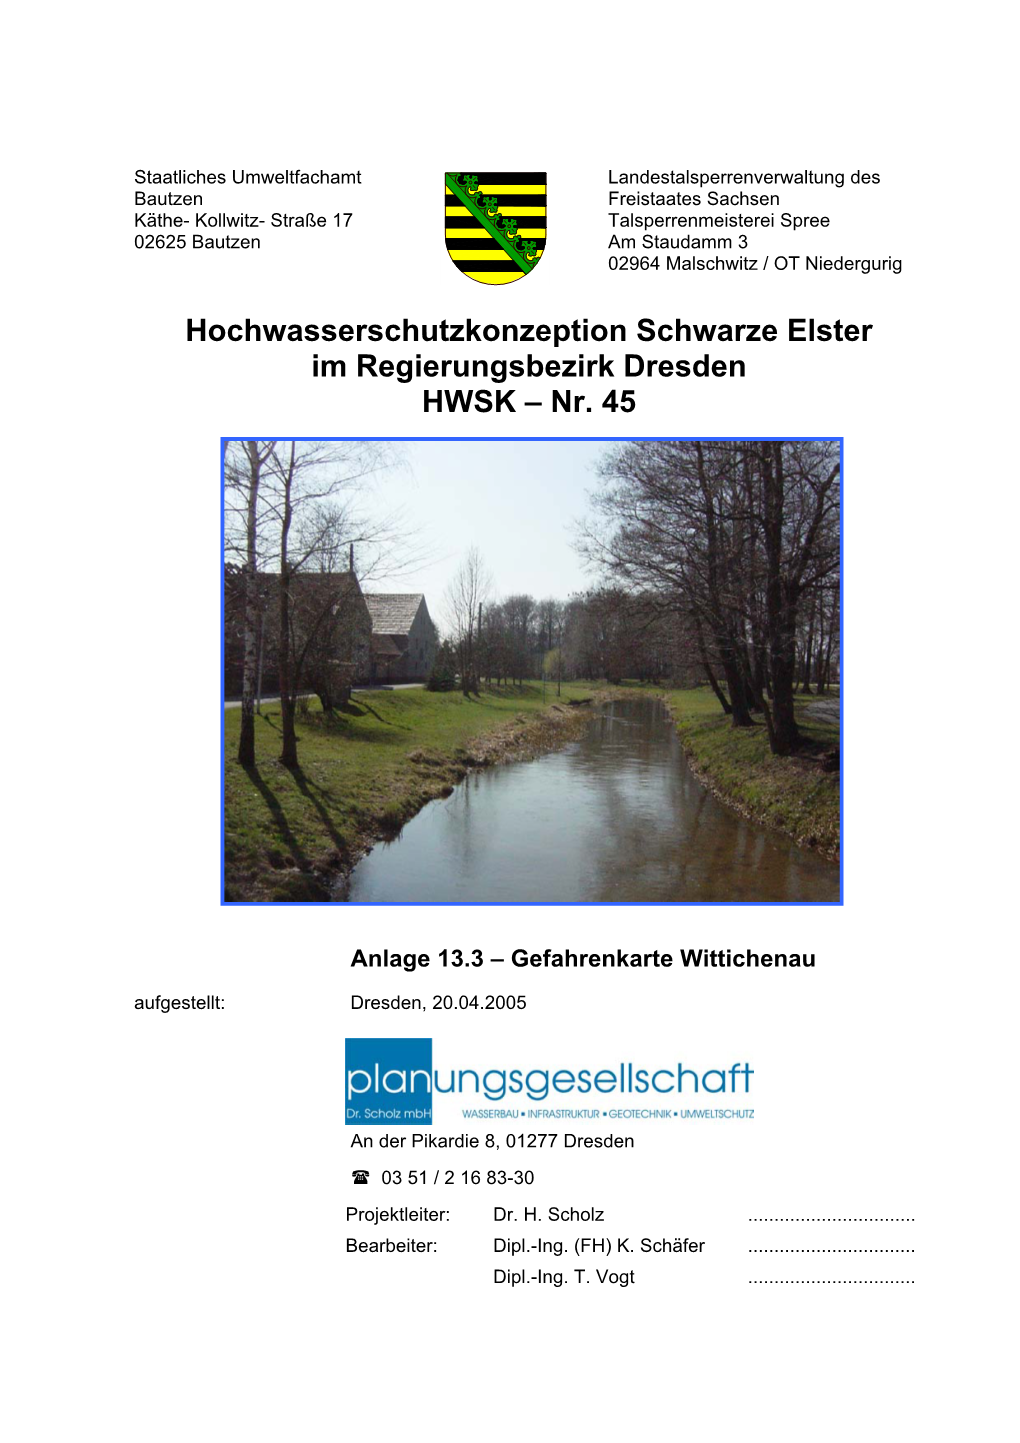 HWSK-Nr. 45, Gefahrenkarte Stadt Wittichenau